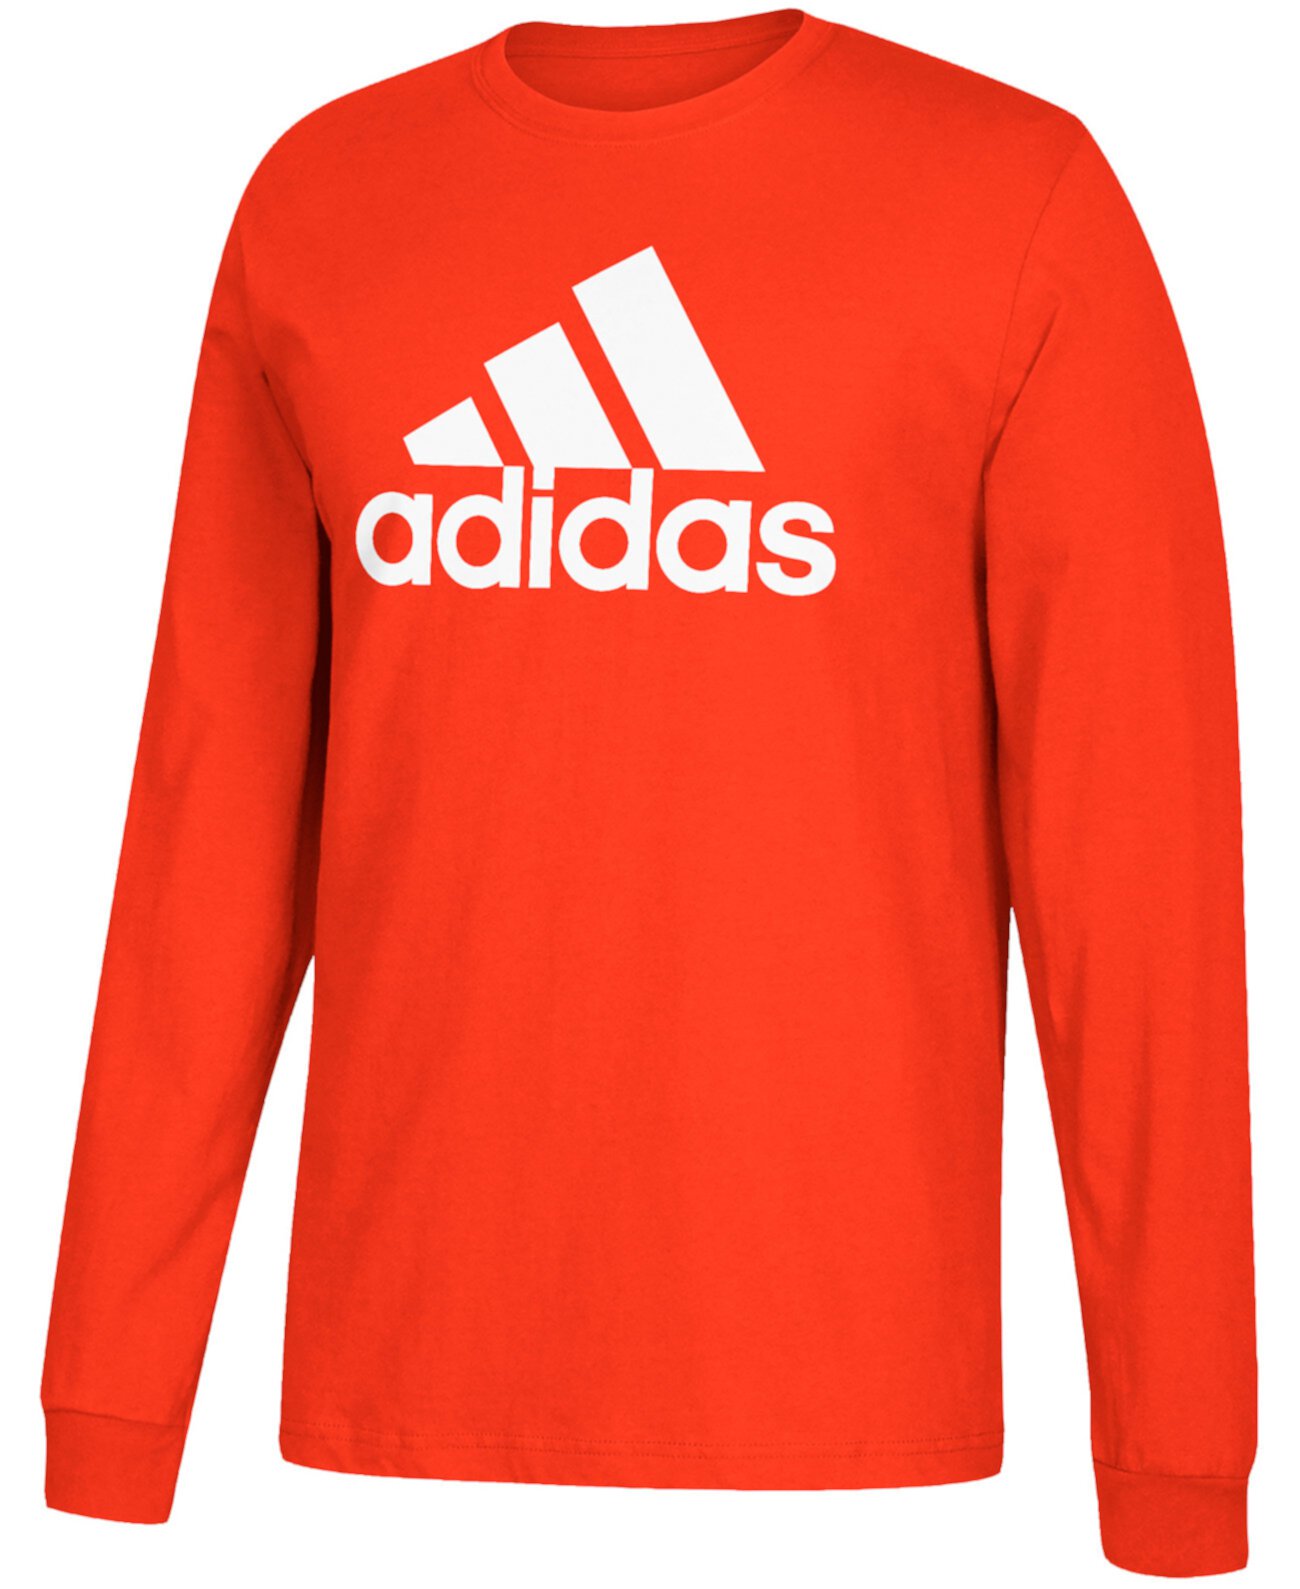 Мужская футболка с длинным рукавом с логотипом Adidas